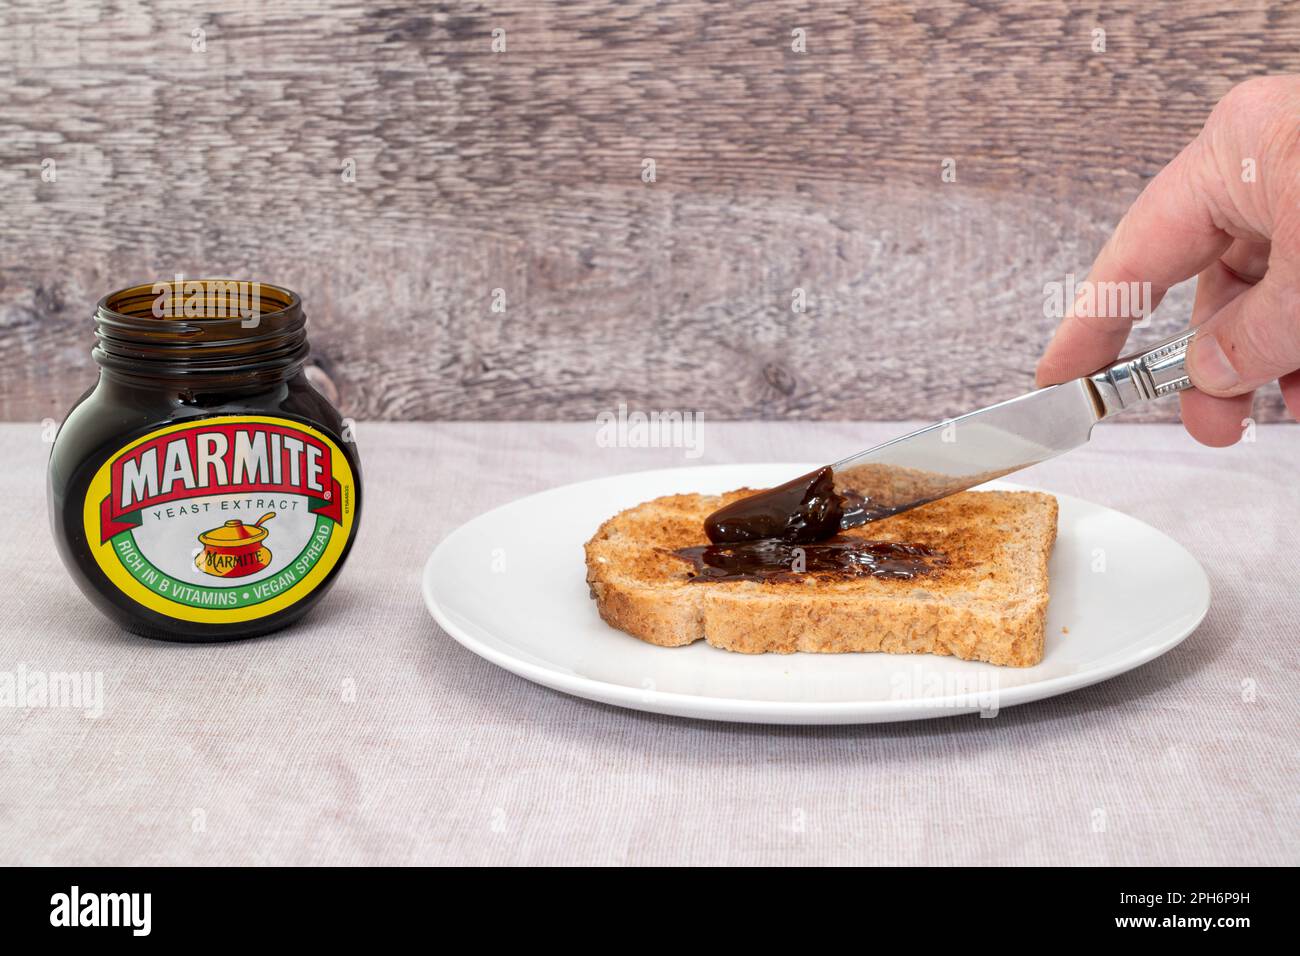 London, Vereinigtes Königreich - 21. März 2023 : Marmite wird auf einer Scheibe getoastetes Brot gestreut. Marmite ist ein Hefeextrakt, der reich an Vitamin B ist Stockfoto